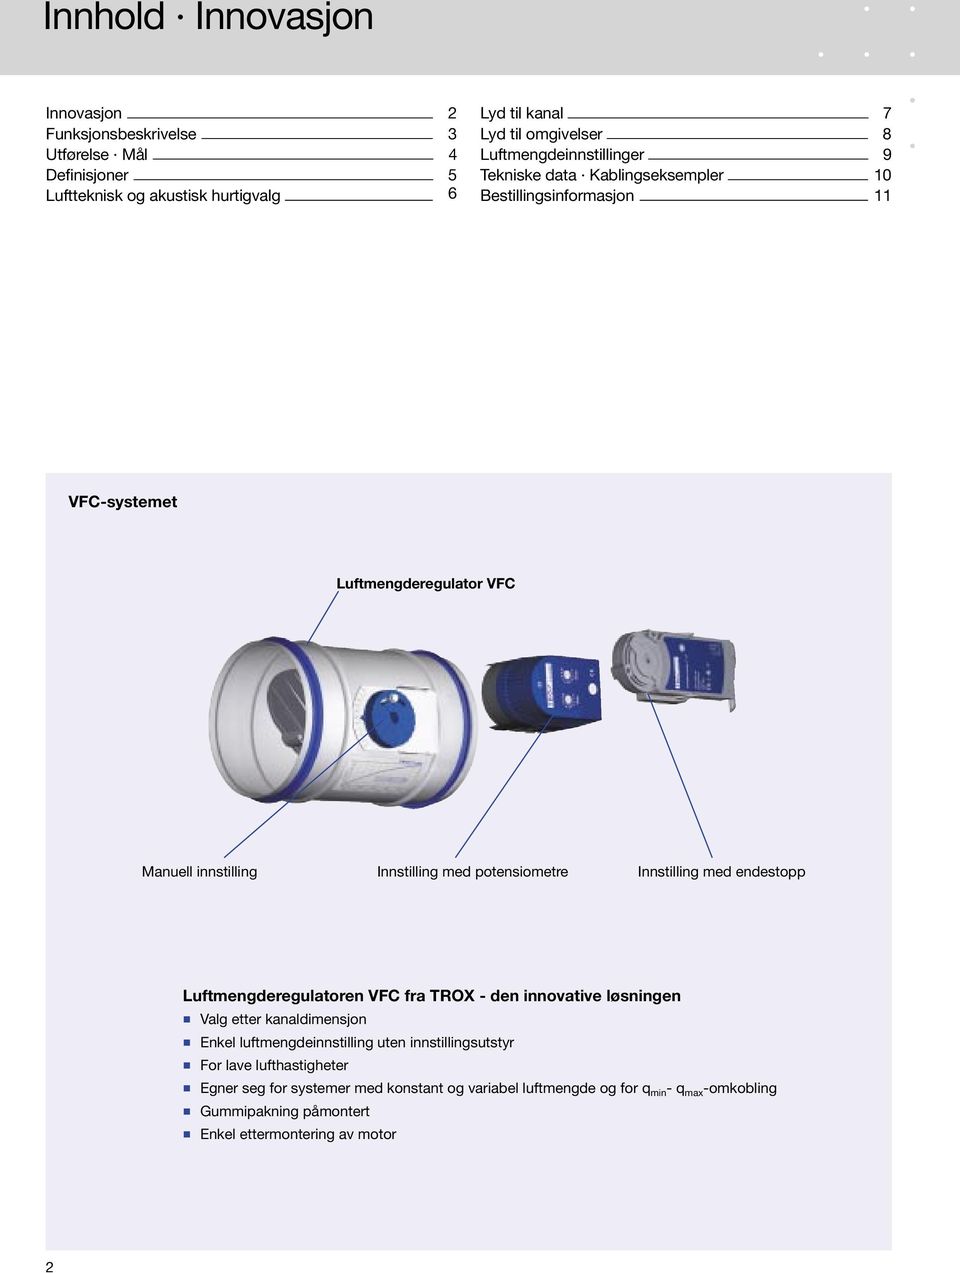 potensiometre Innstilling med endestopp Luftmengderegulatoren VFC fra TROX - den innovative løsningen Valg etter kanaldimensjon Enkel luftmengdeinnstilling uten